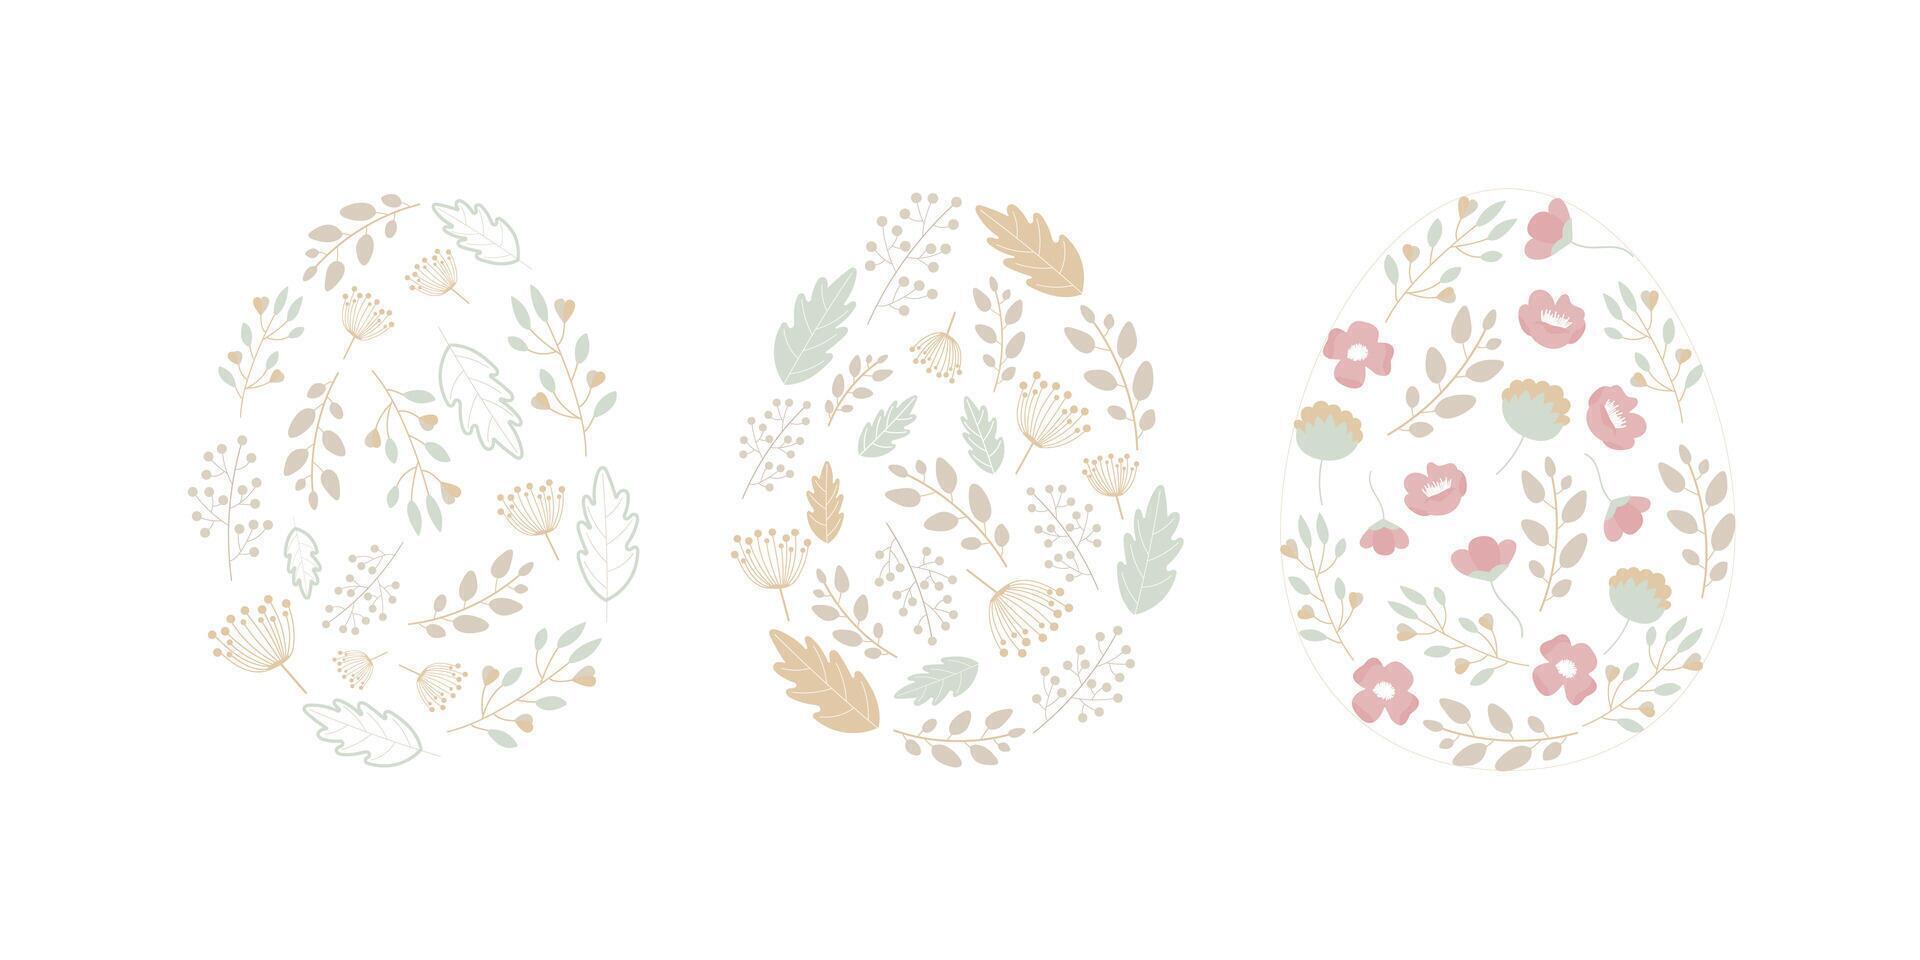 Pascua de Resurrección huevos con floral modelo en gente estilo. tarjeta postal, bandera, póster contento Pascua de Resurrección día vector